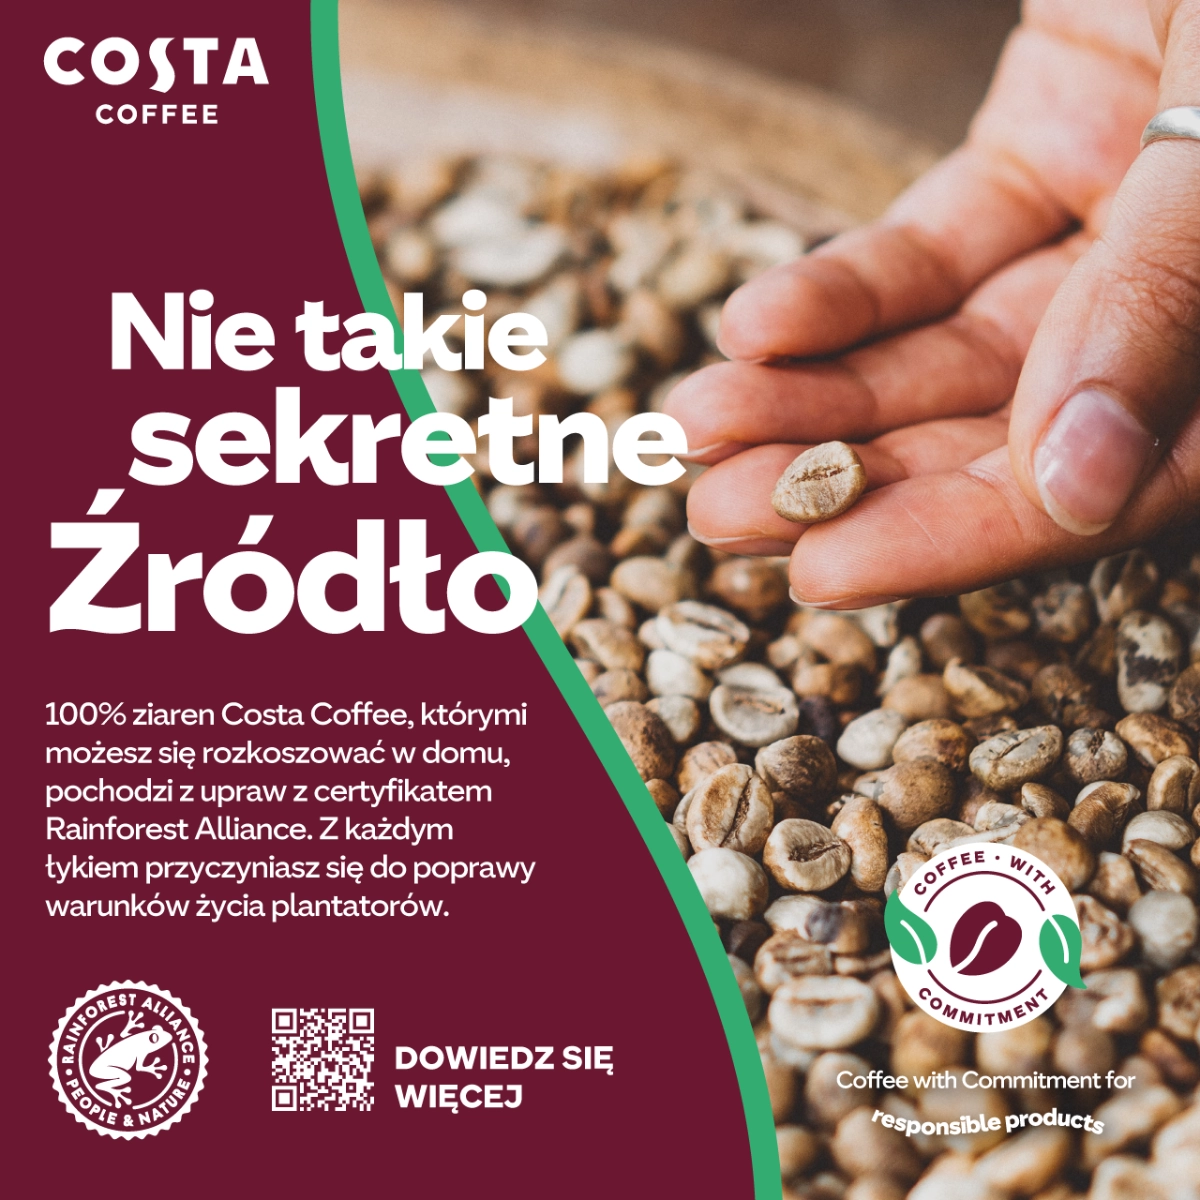 100% ziaren Costa Coffee pochodzi z upraw z certyfikatem Rainforest Alliance.